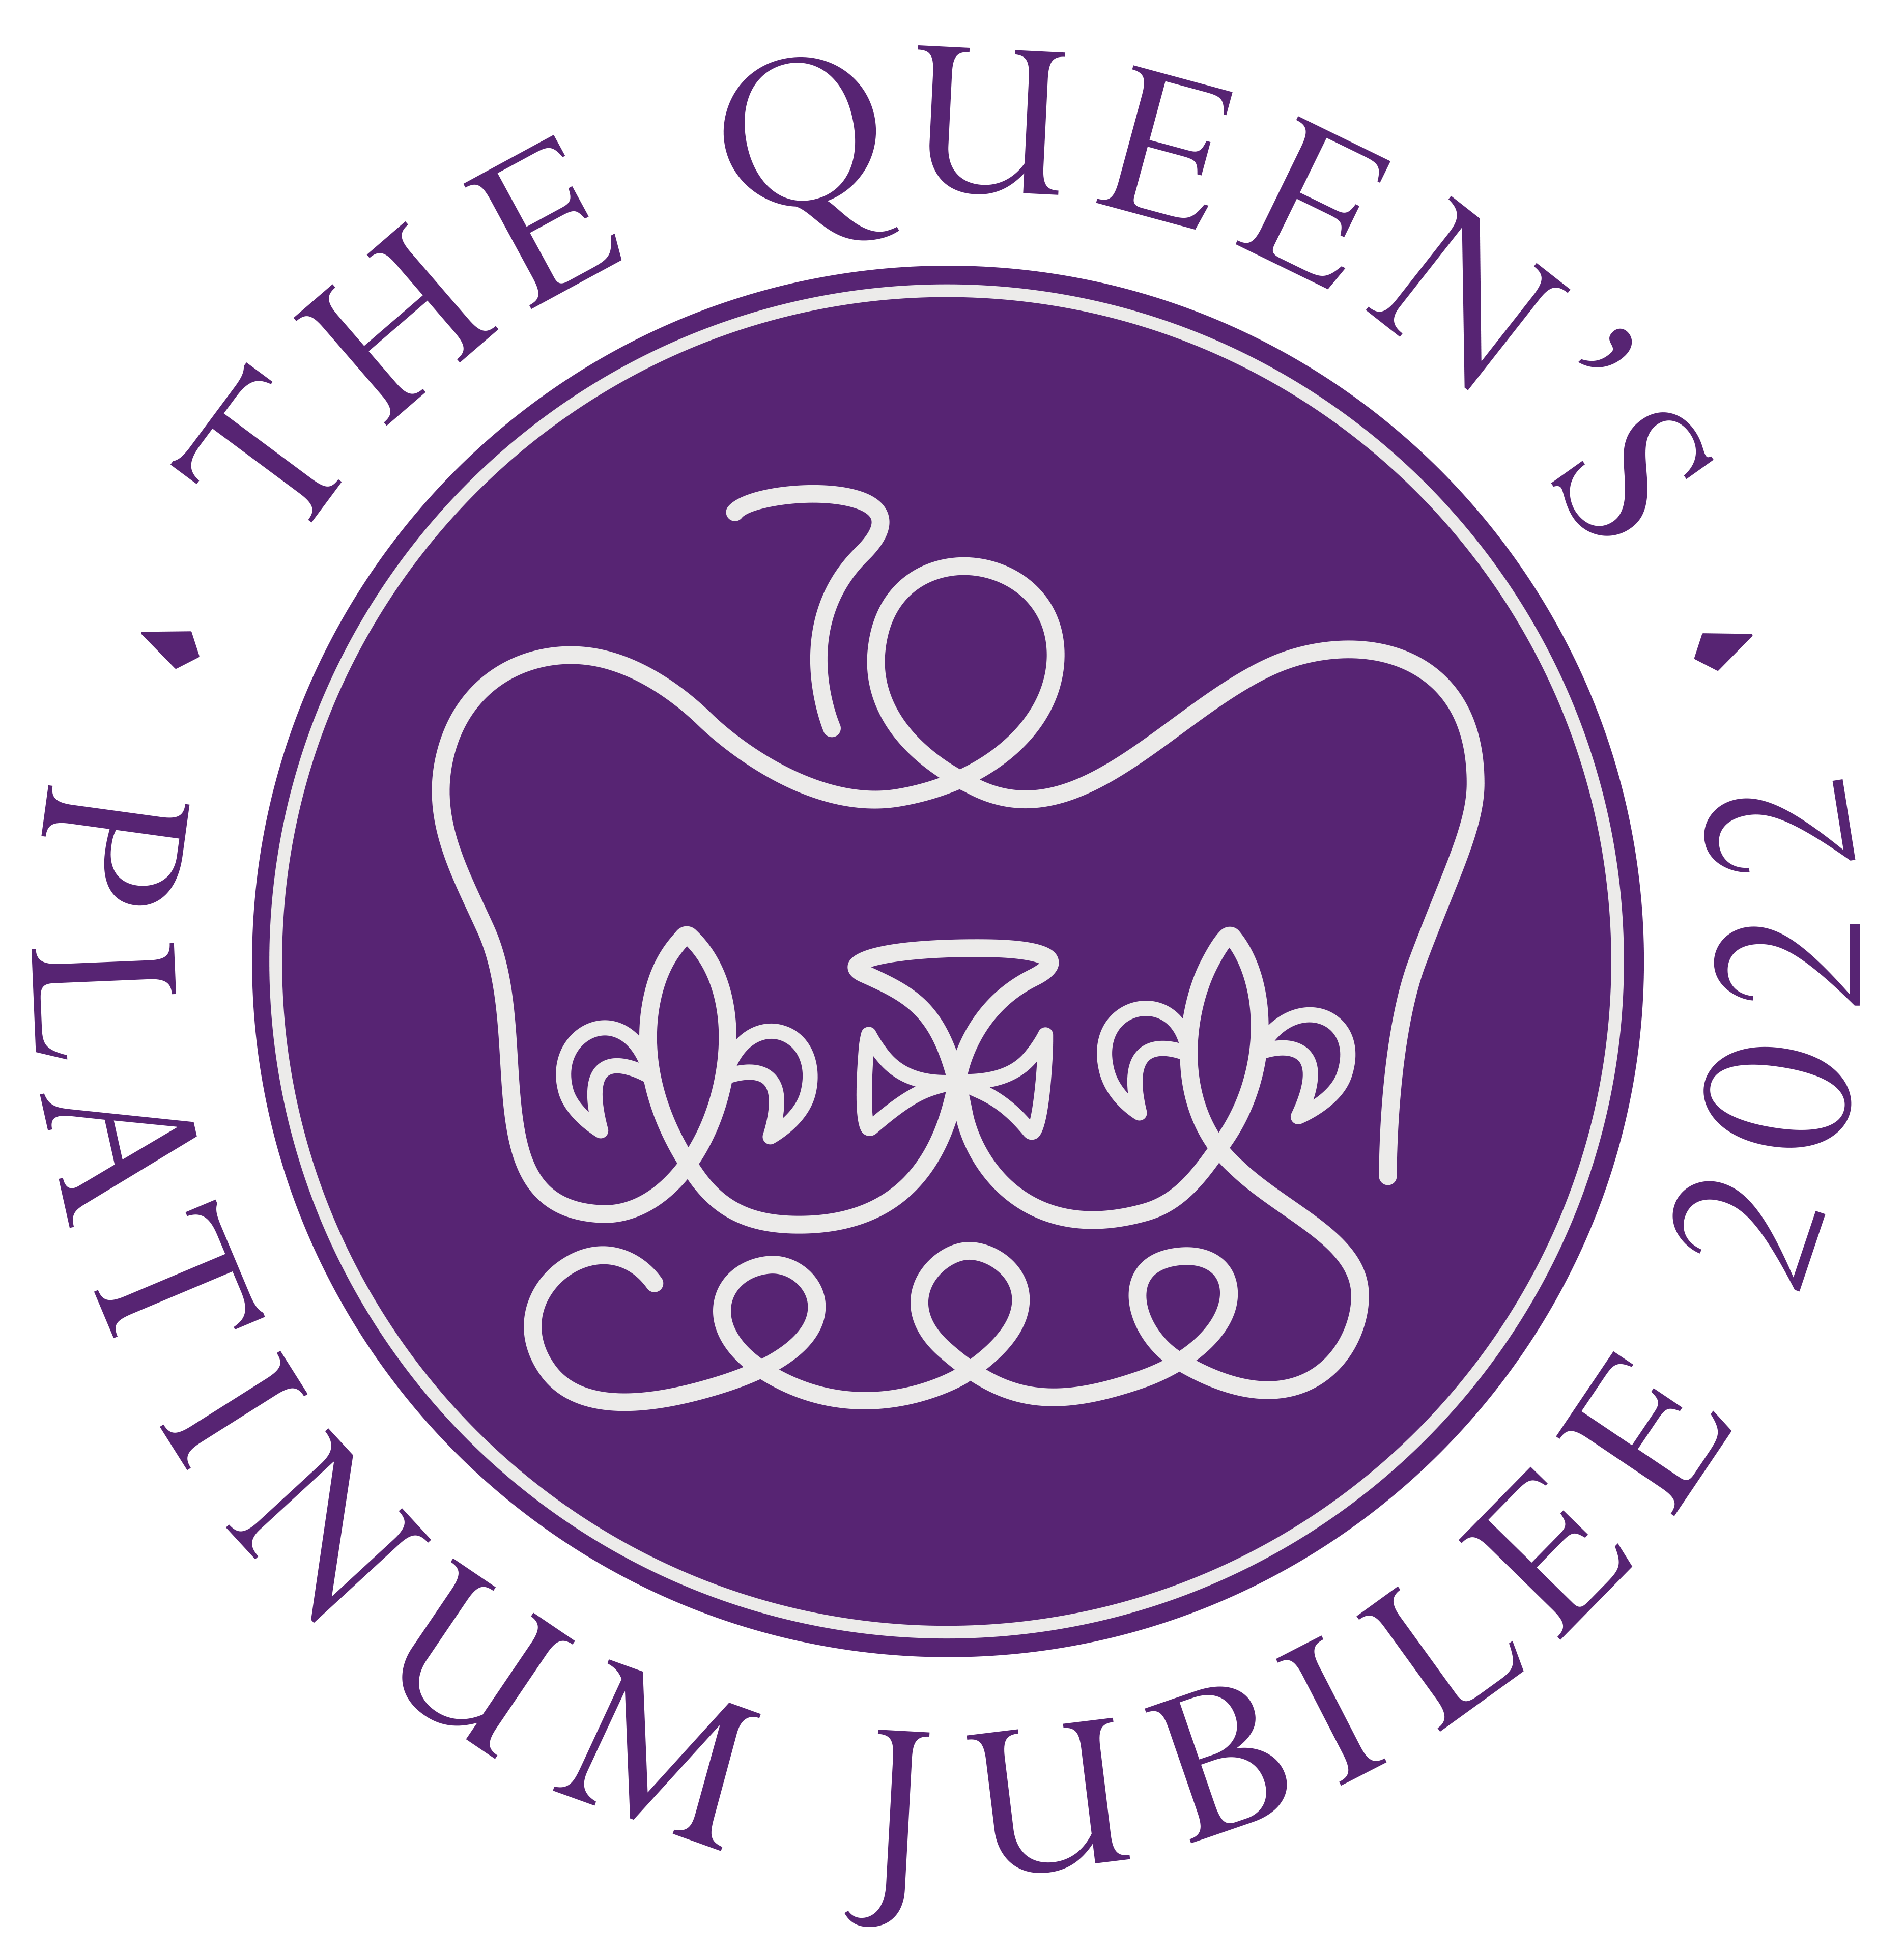 Queen's Platinum Jubilee Celebrations image